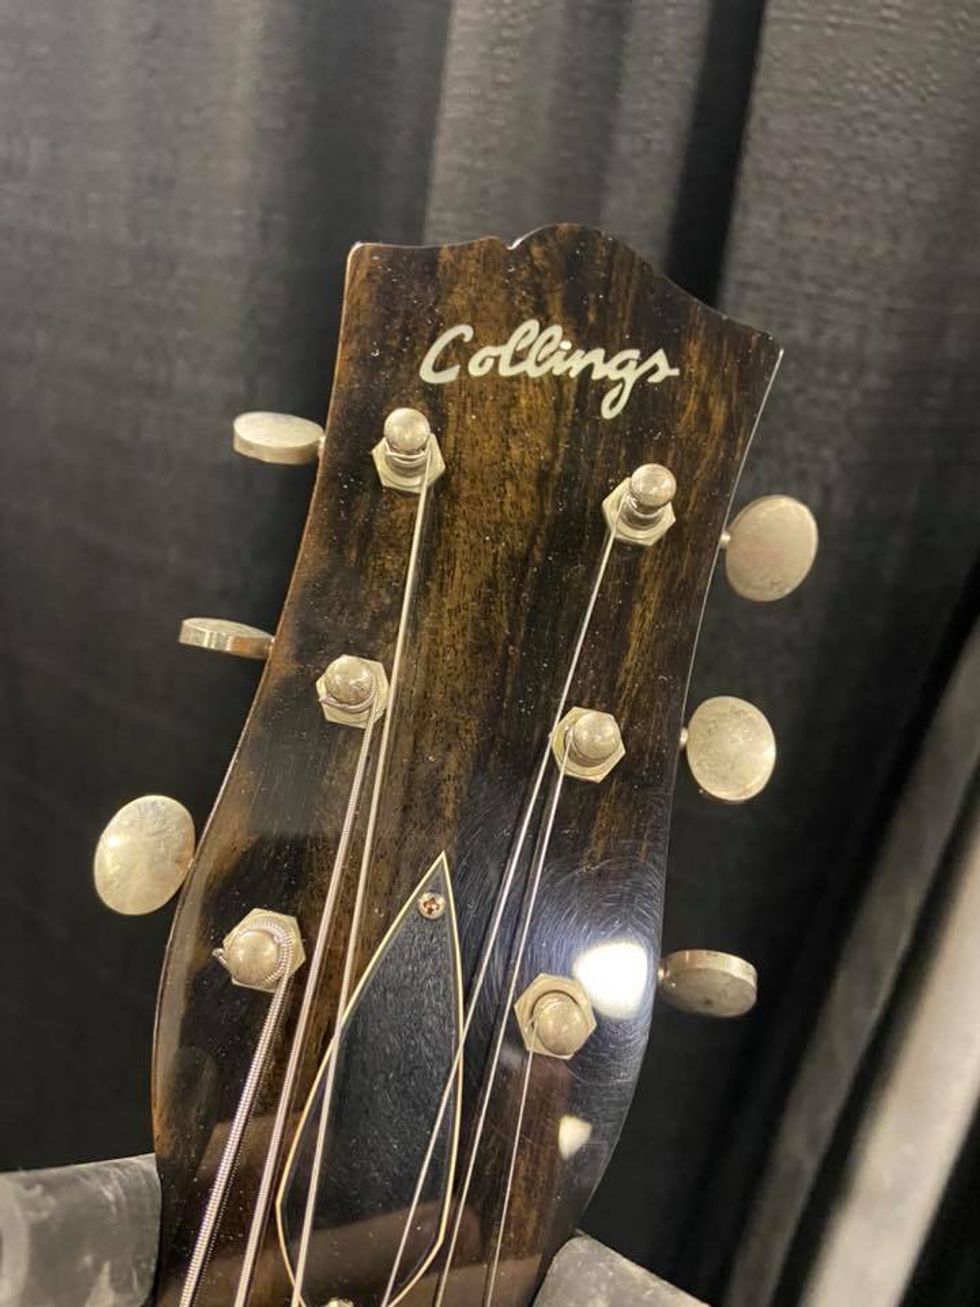 Collings Guitars